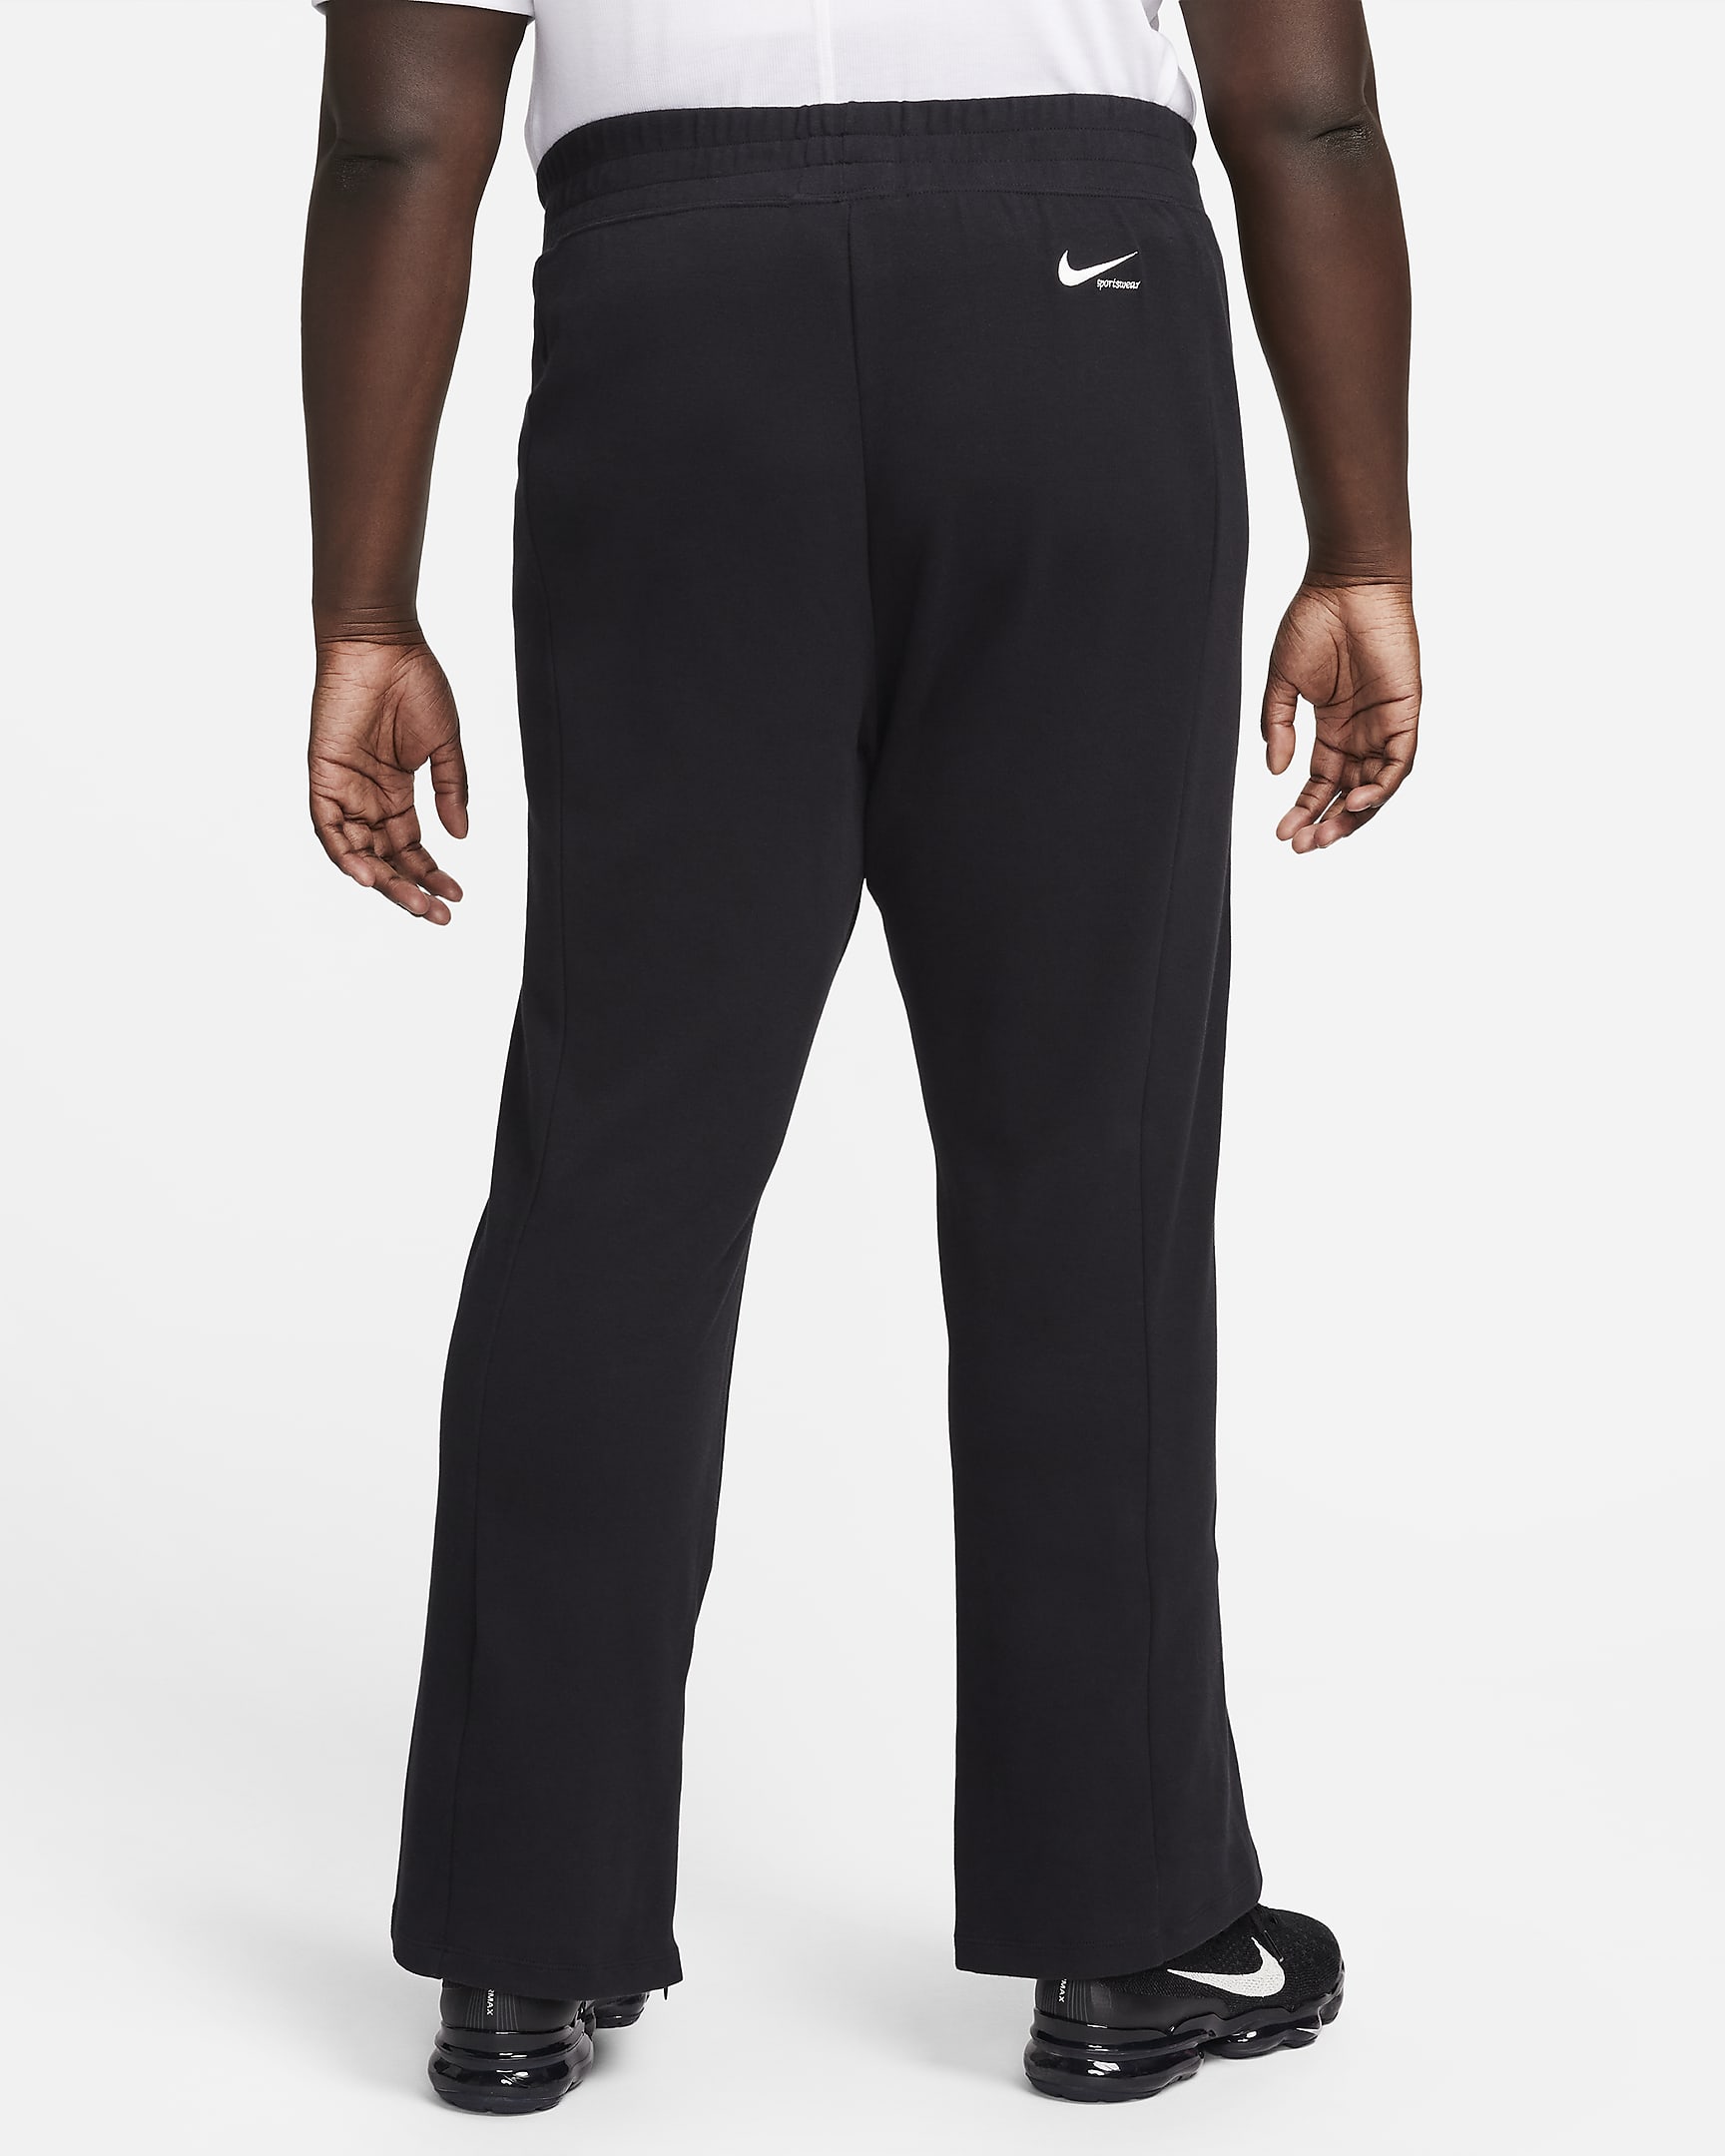 Nike Sportswear Collection Women's Slit-Hem Trousers (Plus Size). Nike HR